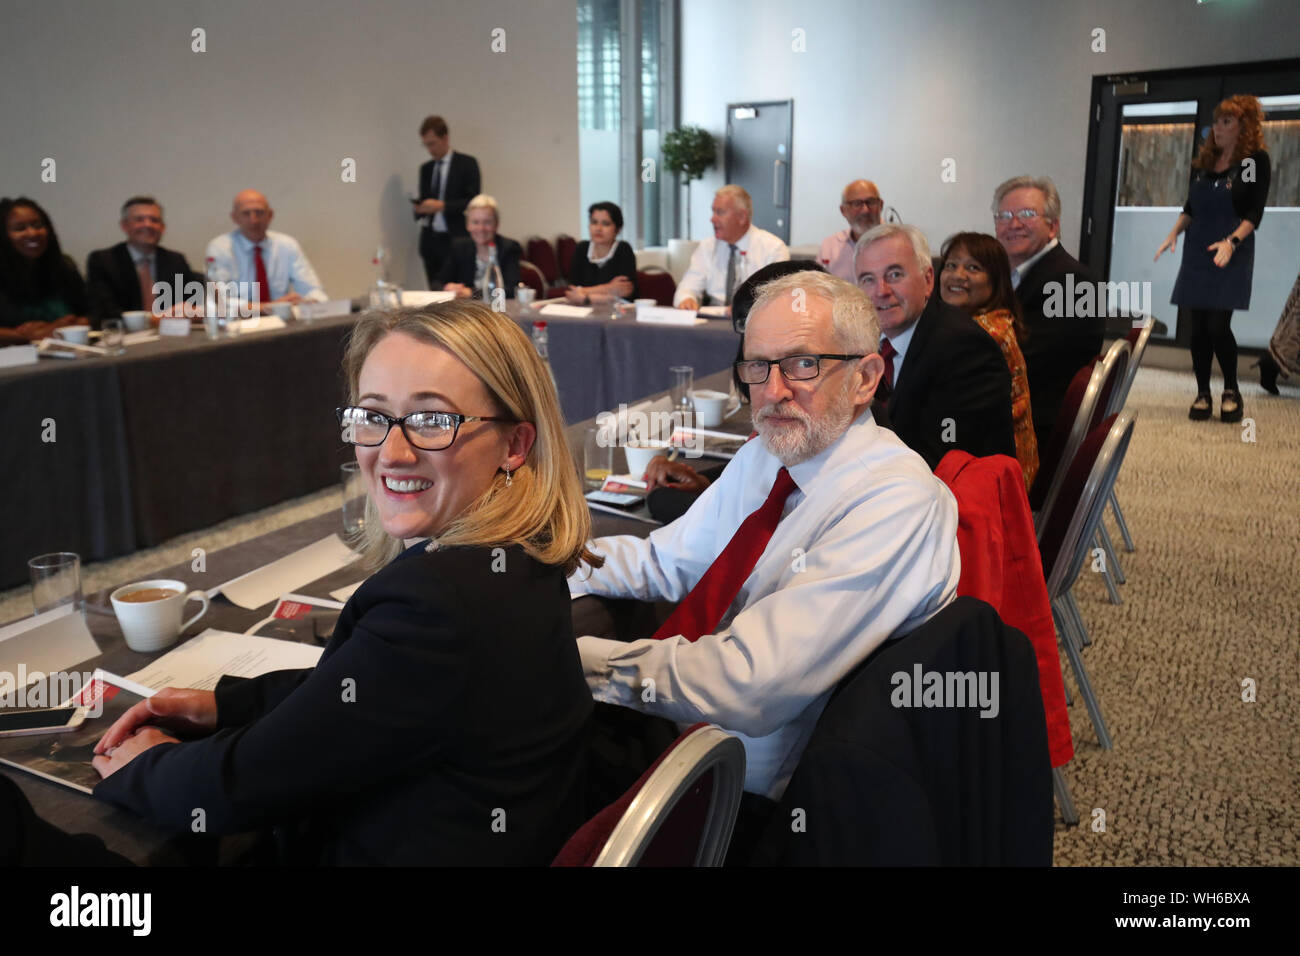 Leader du travail Jeremy Corbyn (deuxième à gauche) avec les membres de son cabinet fantôme dans le théâtre Lowry dans la région de Salford Quays, Manchester lors d'une réunion du cabinet fantôme. Banque D'Images